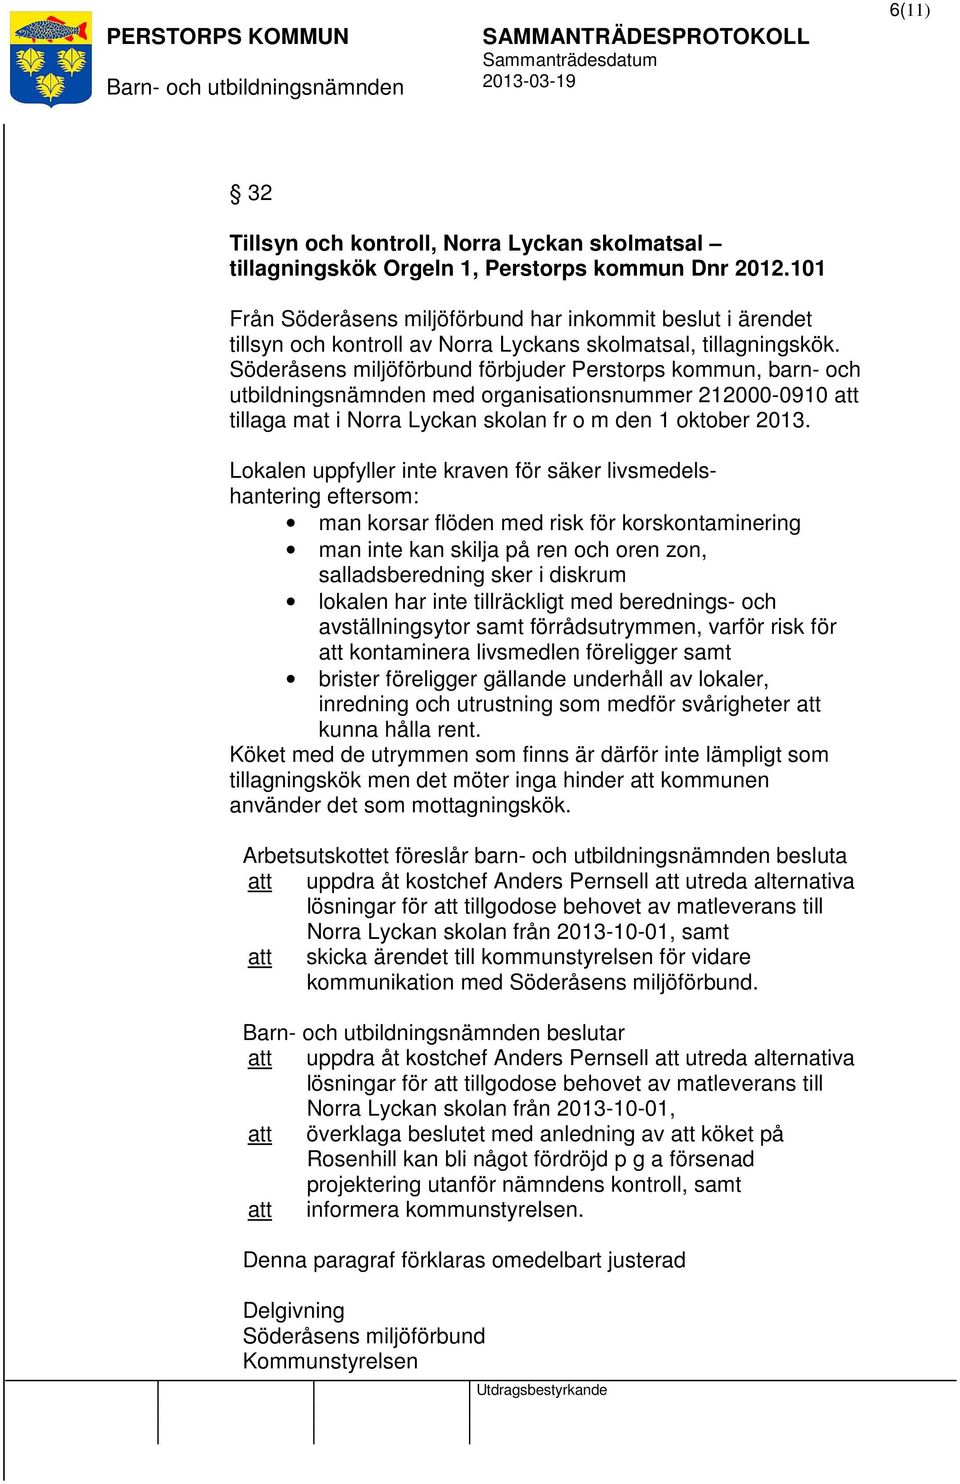 Söderåsens miljöförbund förbjuder Perstorps kommun, barn- och utbildningsnämnden med organisationsnummer 212000-0910 tillaga mat i Norra Lyckan skolan fr o m den 1 oktober 2013.